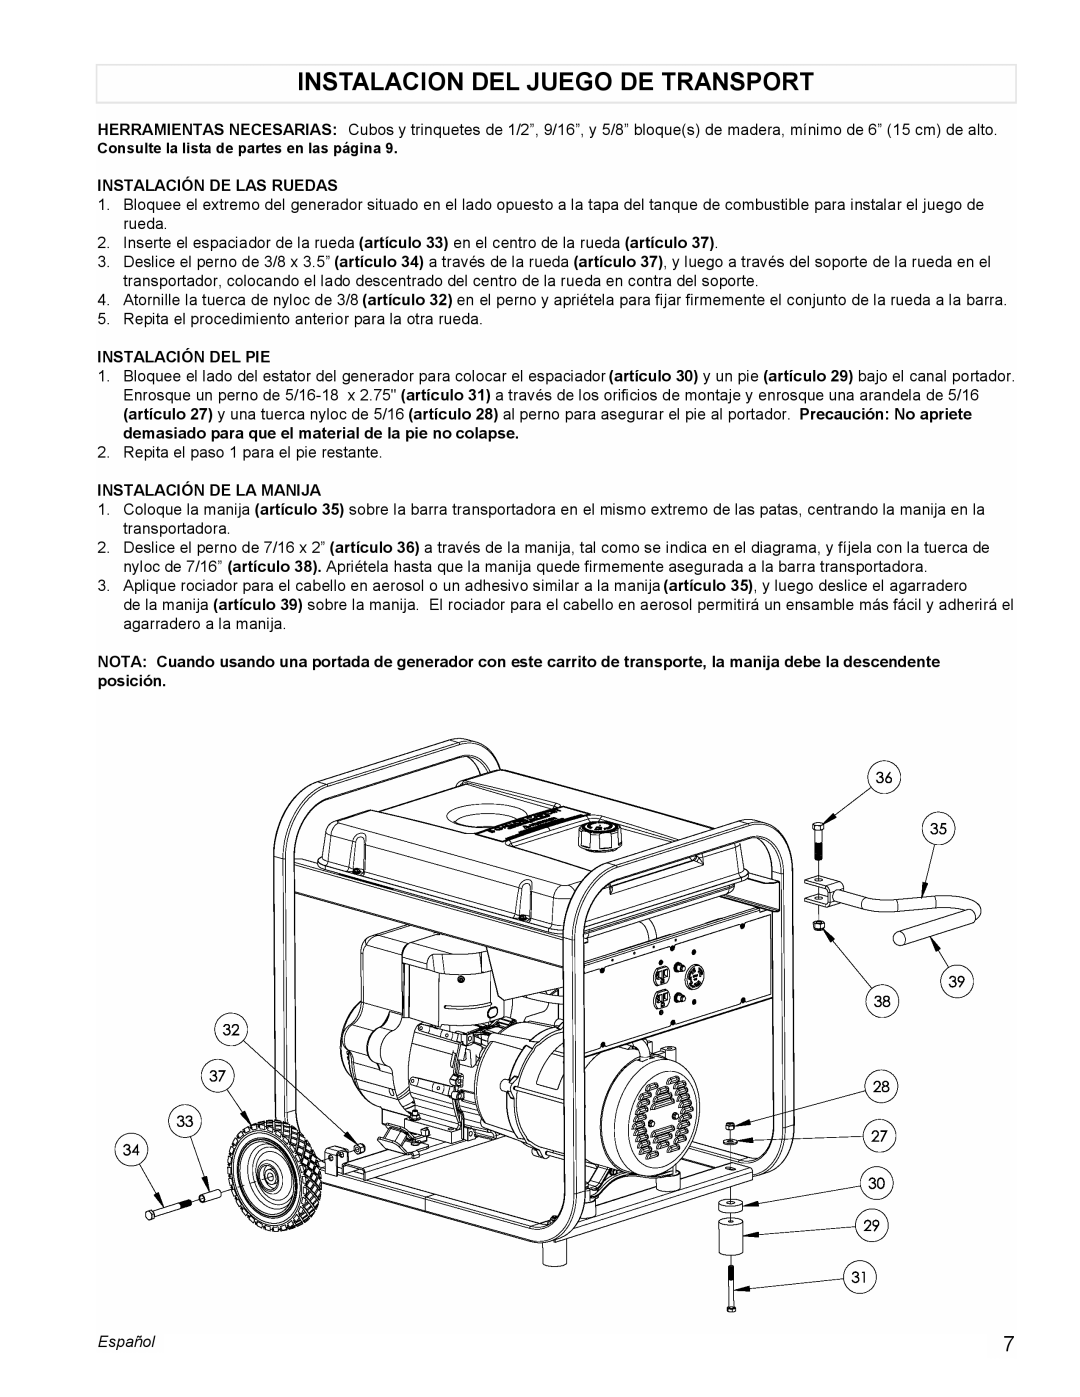 Powermate PM0525303.02 manual Instalacion Del Juego De Transport, Instalación De Las Ruedas, Instalación Del Pie, Español 